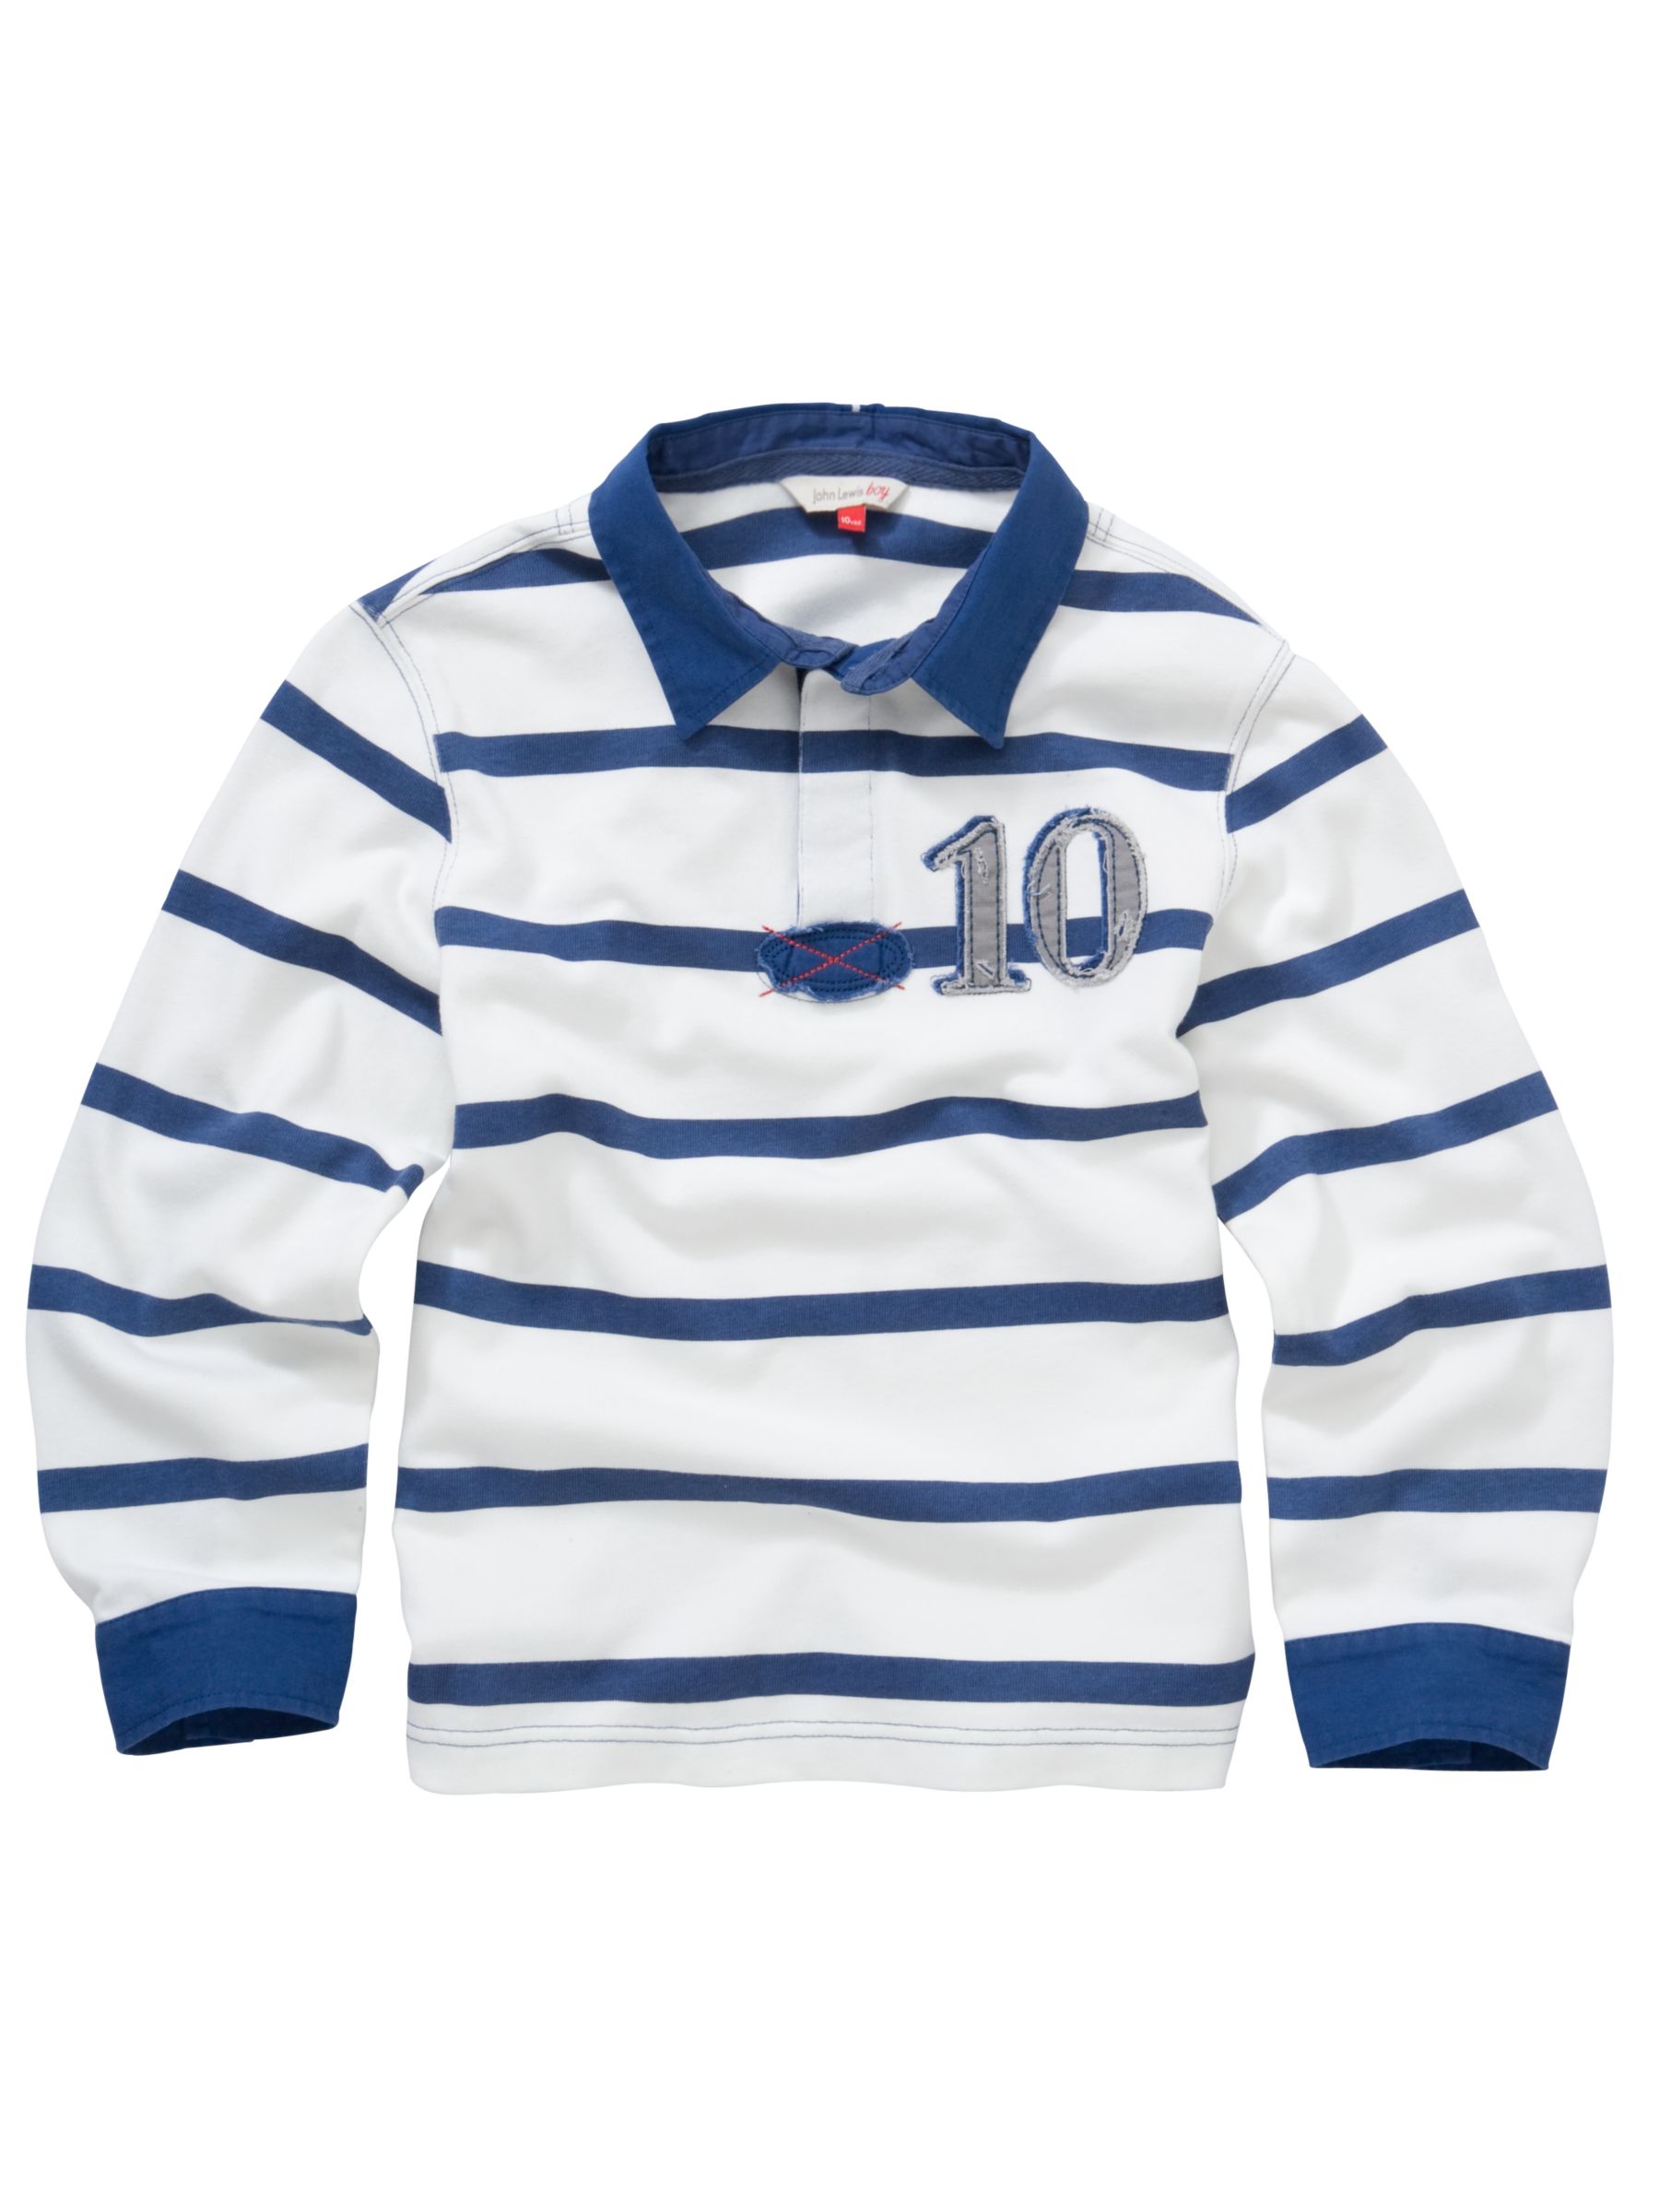 John Lewis Boy Stripe Rugby Shirt, White/navy, 2